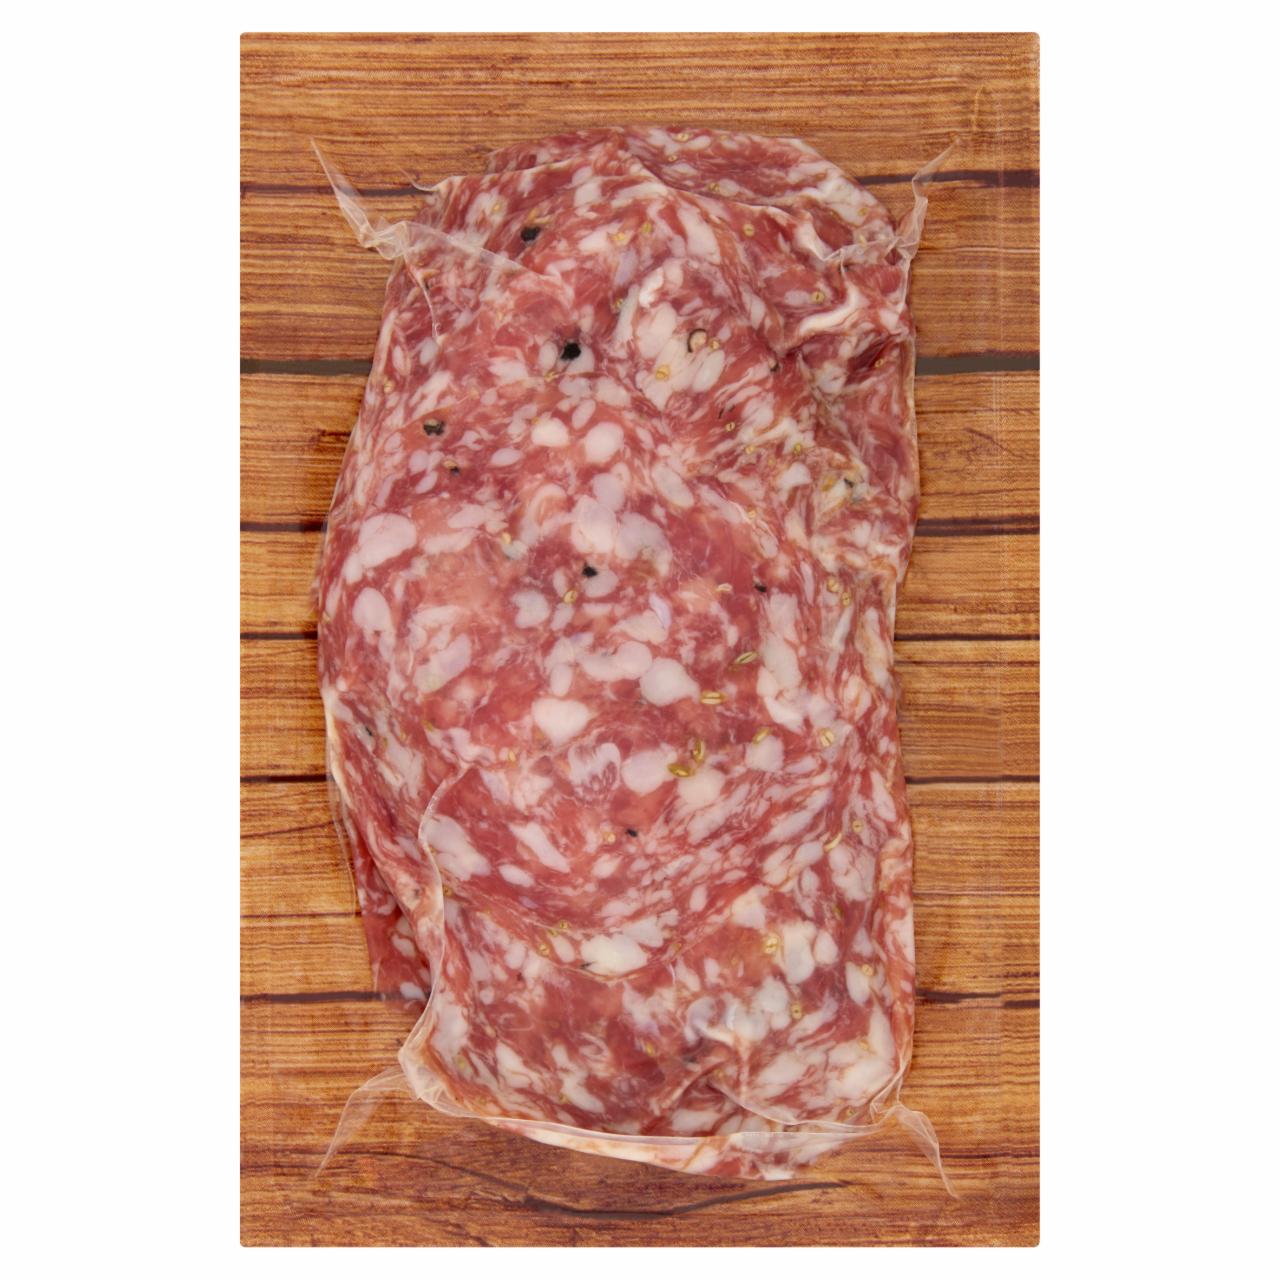 Képek - Olasz szalámi jellegű, hagyományos érlelésű csemege húskészítmény sertéshúsból Kamarko